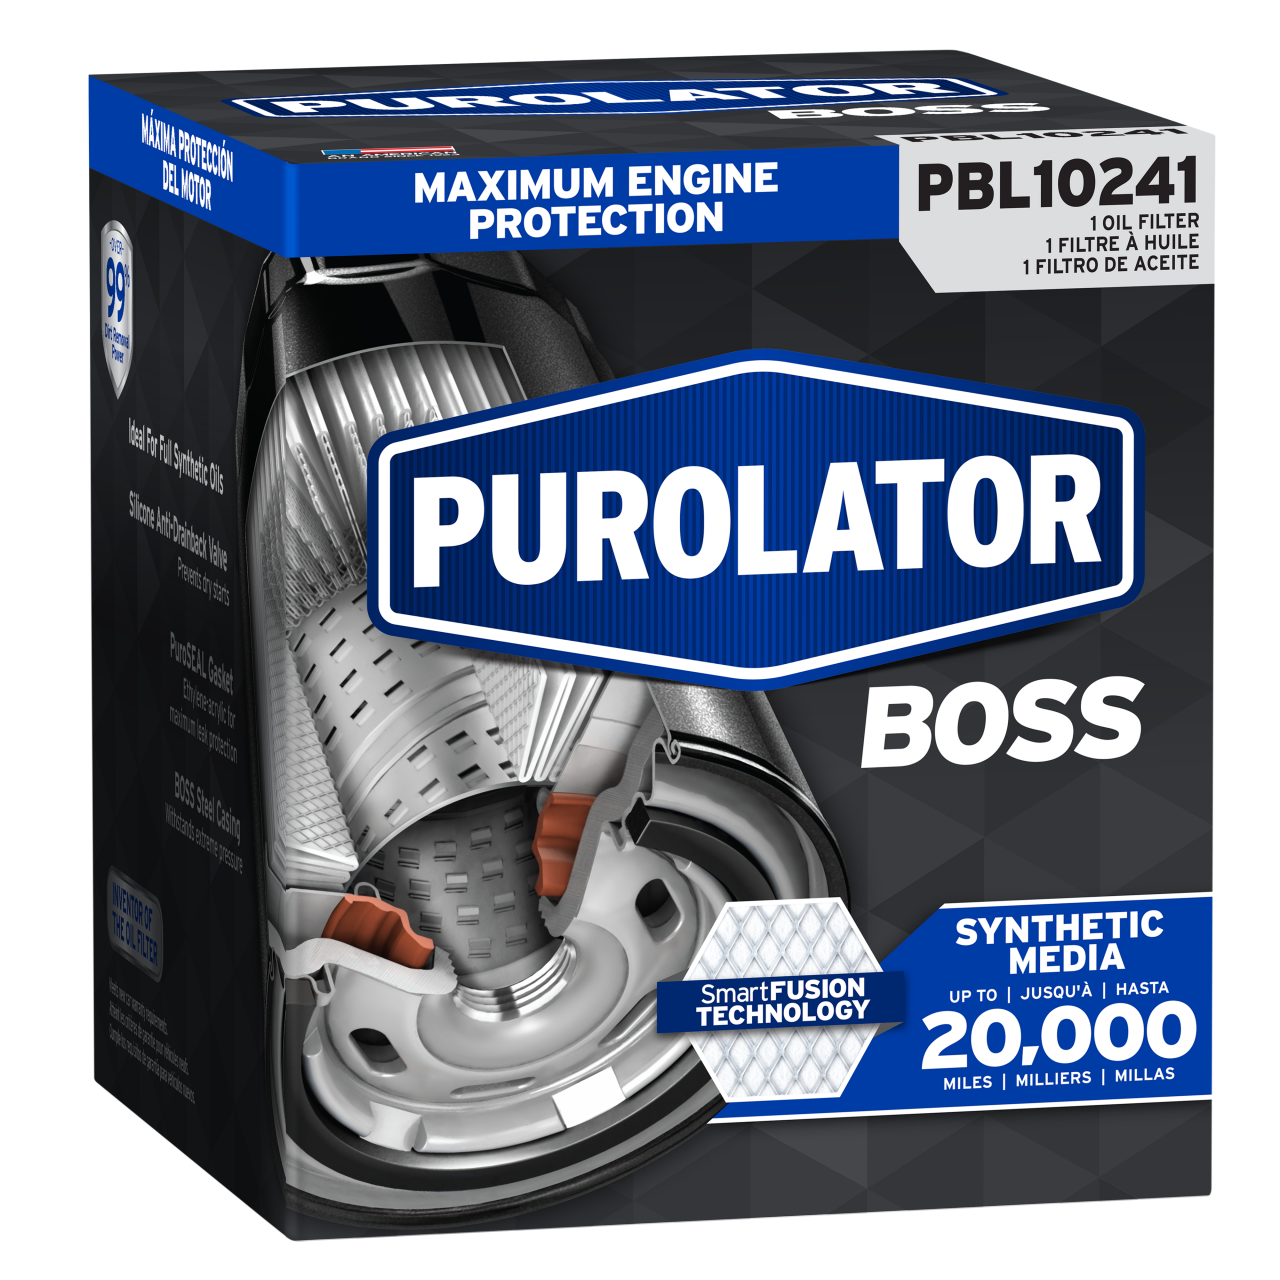 Para obtener la máxima protección y rendimiento del motor, elija filtros de aceite PurolatorBOSS®, la máxima protección del motor.